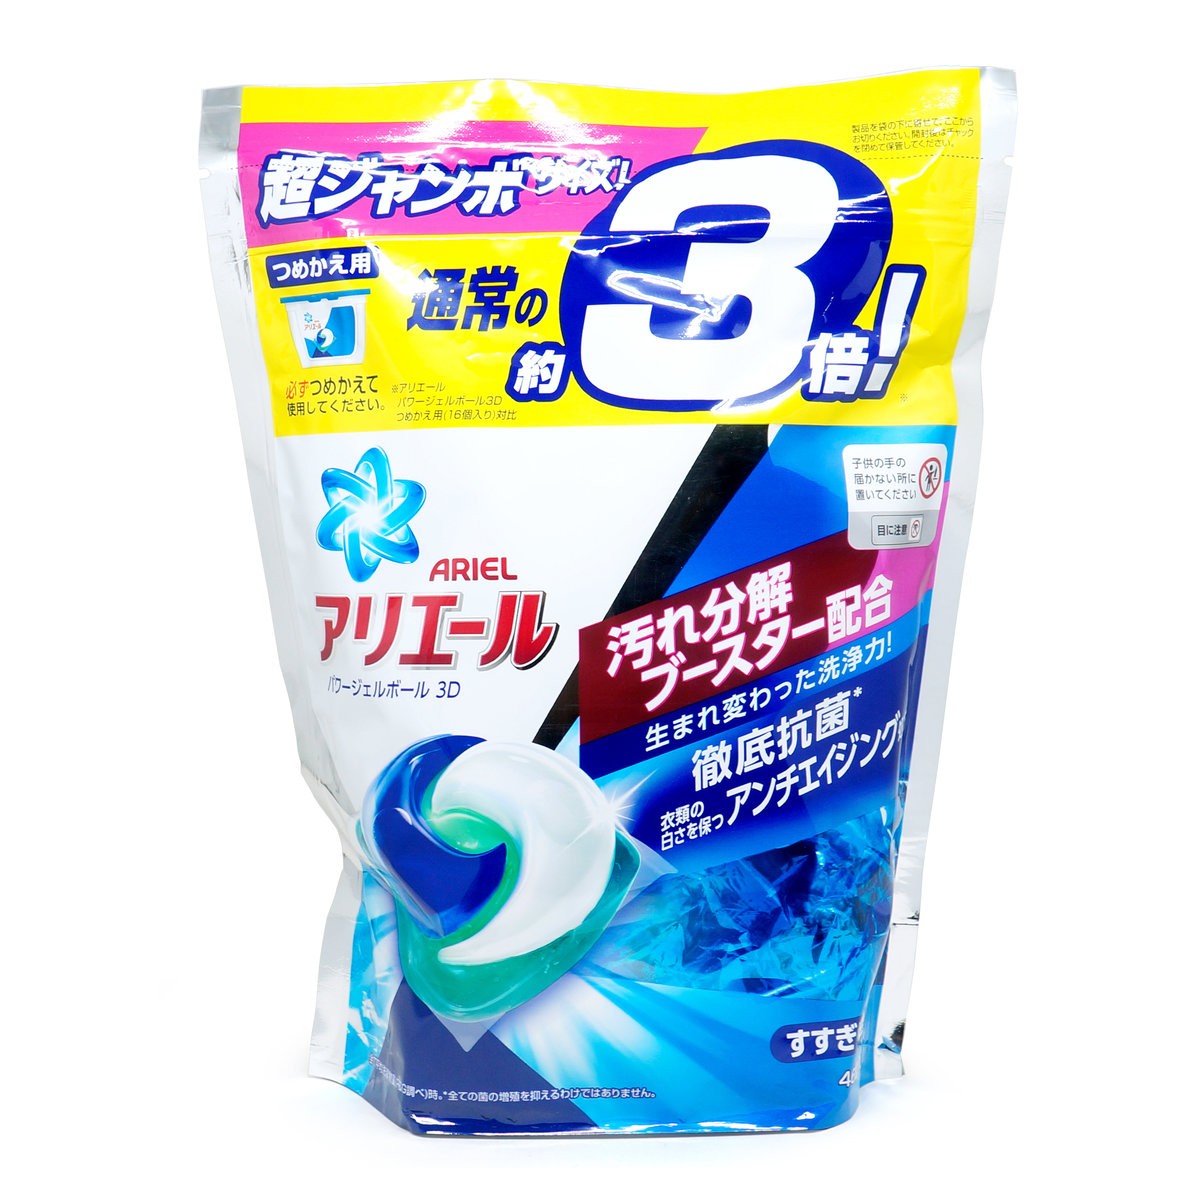 2020新款 日本 P&G 洗衣球 洗衣凝膠球 寶僑  補充包(46顆入)淨白抗菌藍色